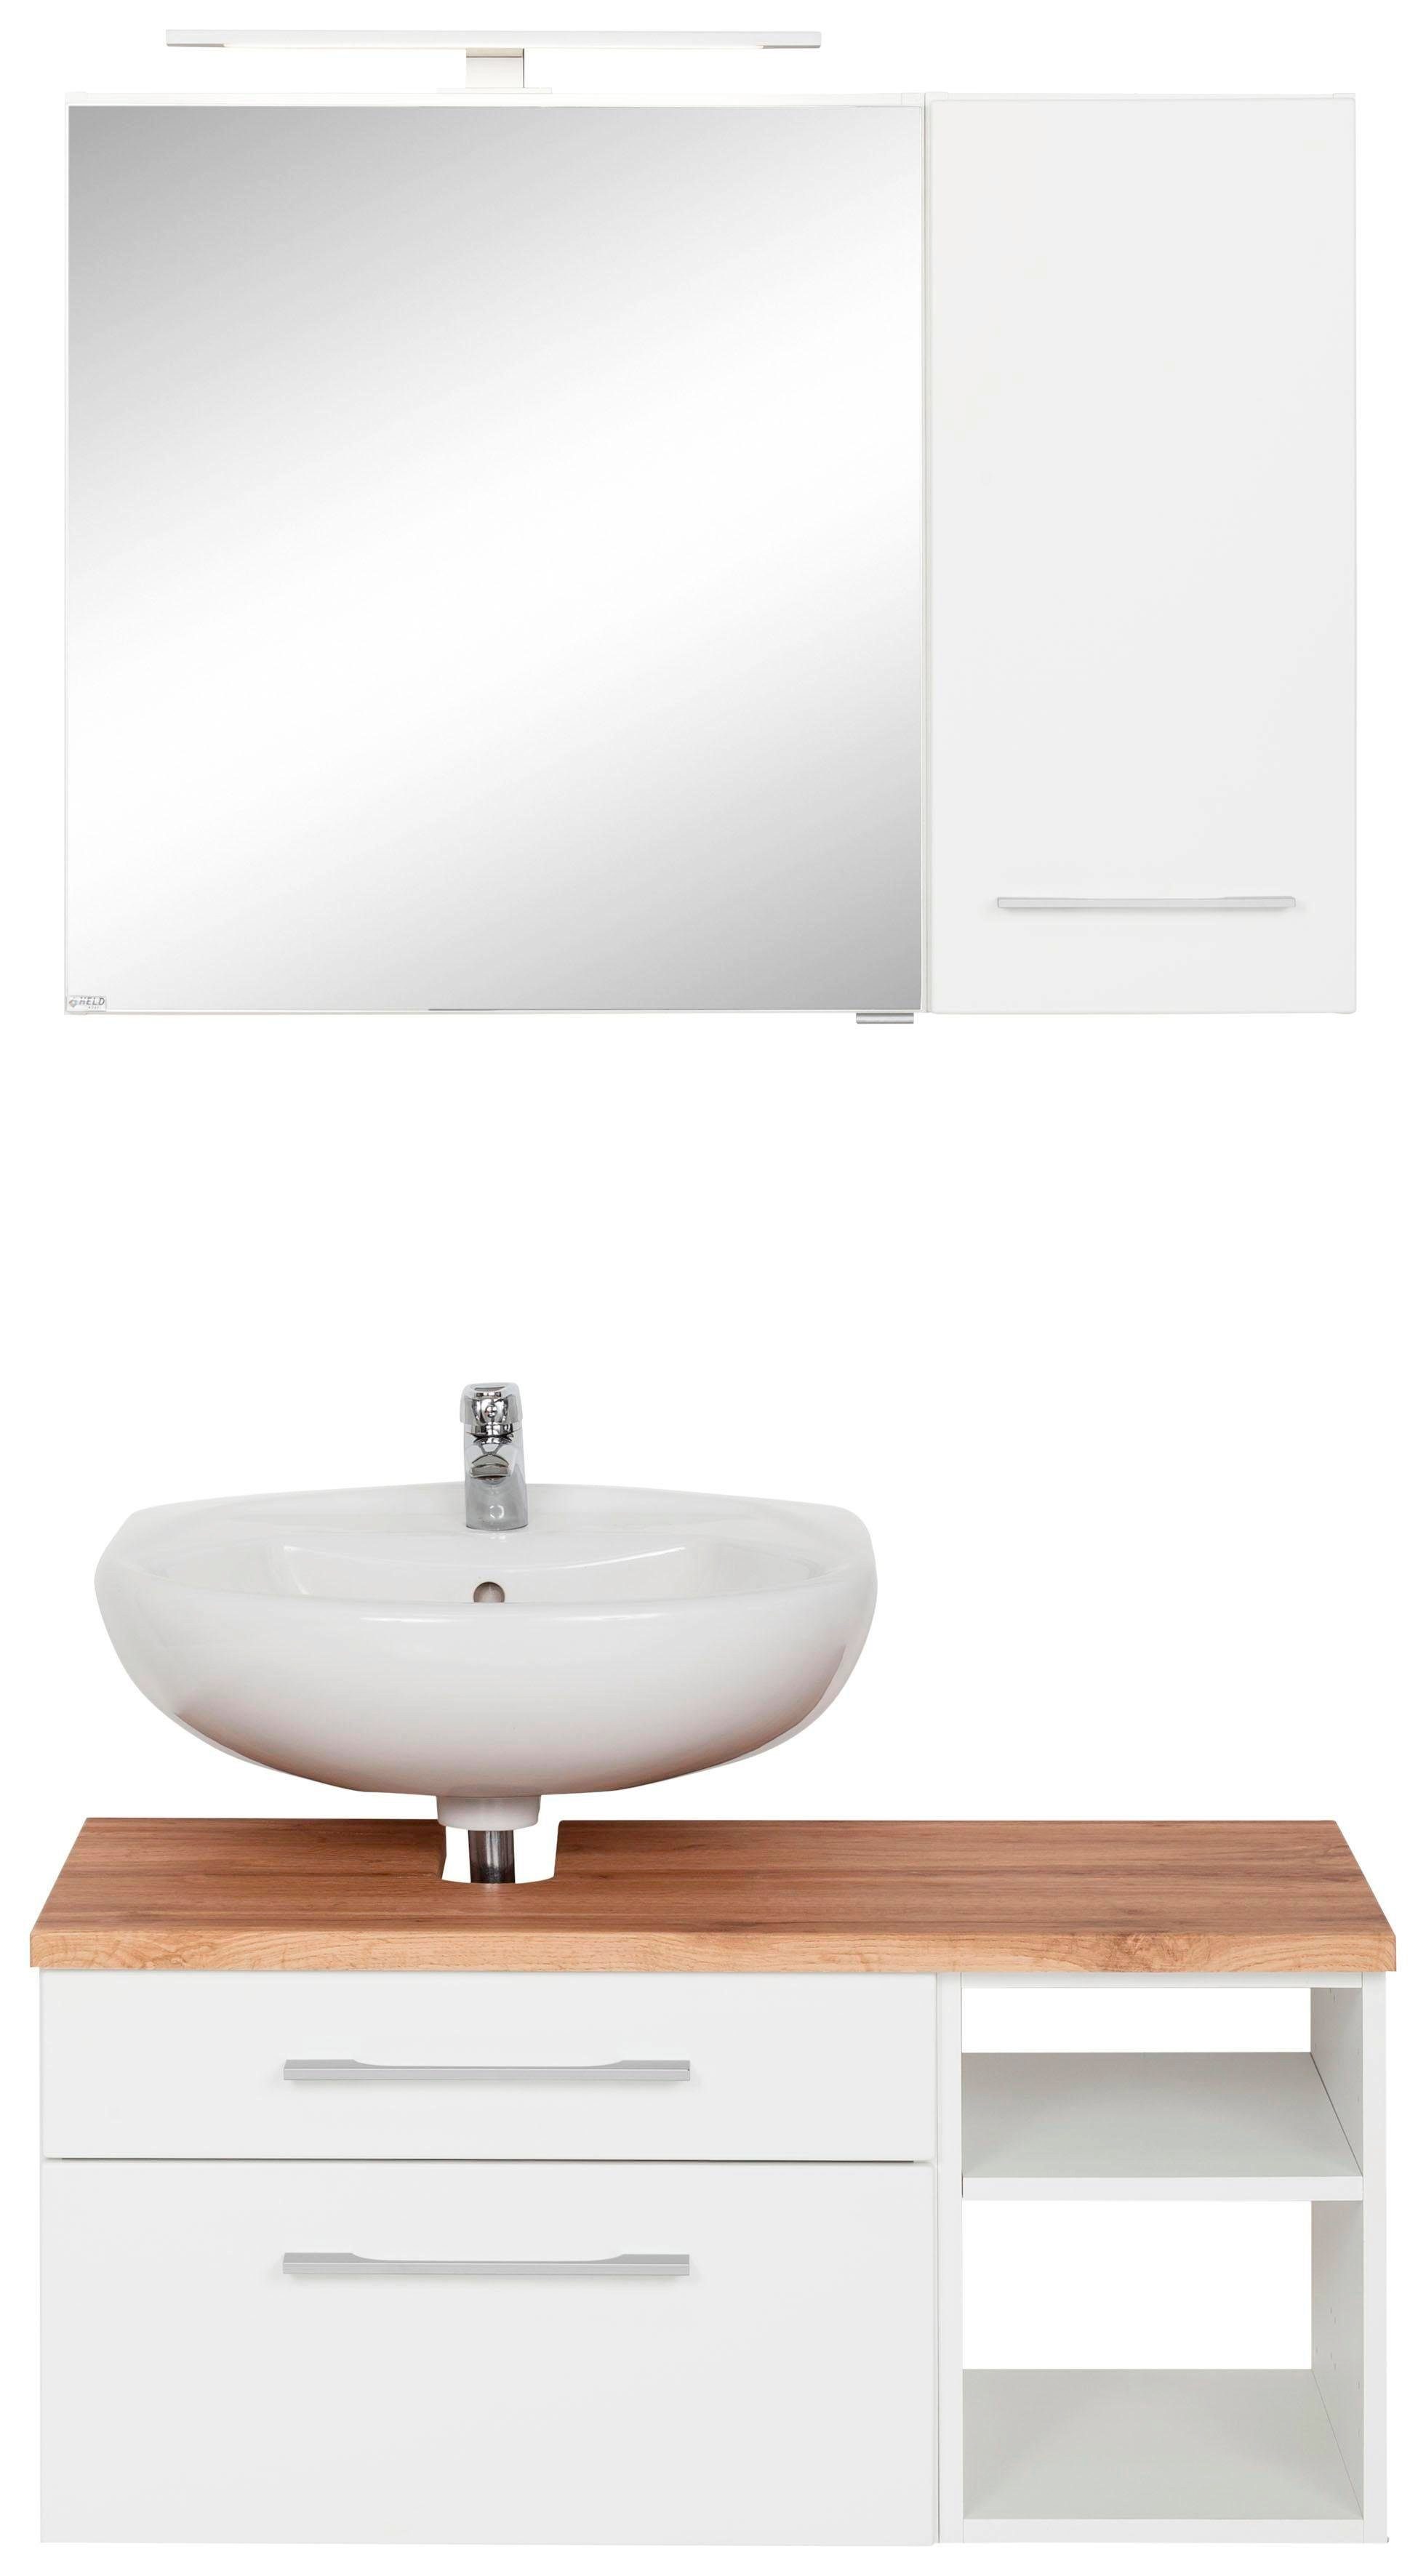 HELD MÖBEL Badkamerserie Davos Badkamer-spiegelkast met ledverlichting, hangend kastje en wastafelonderkast (3 stuks)